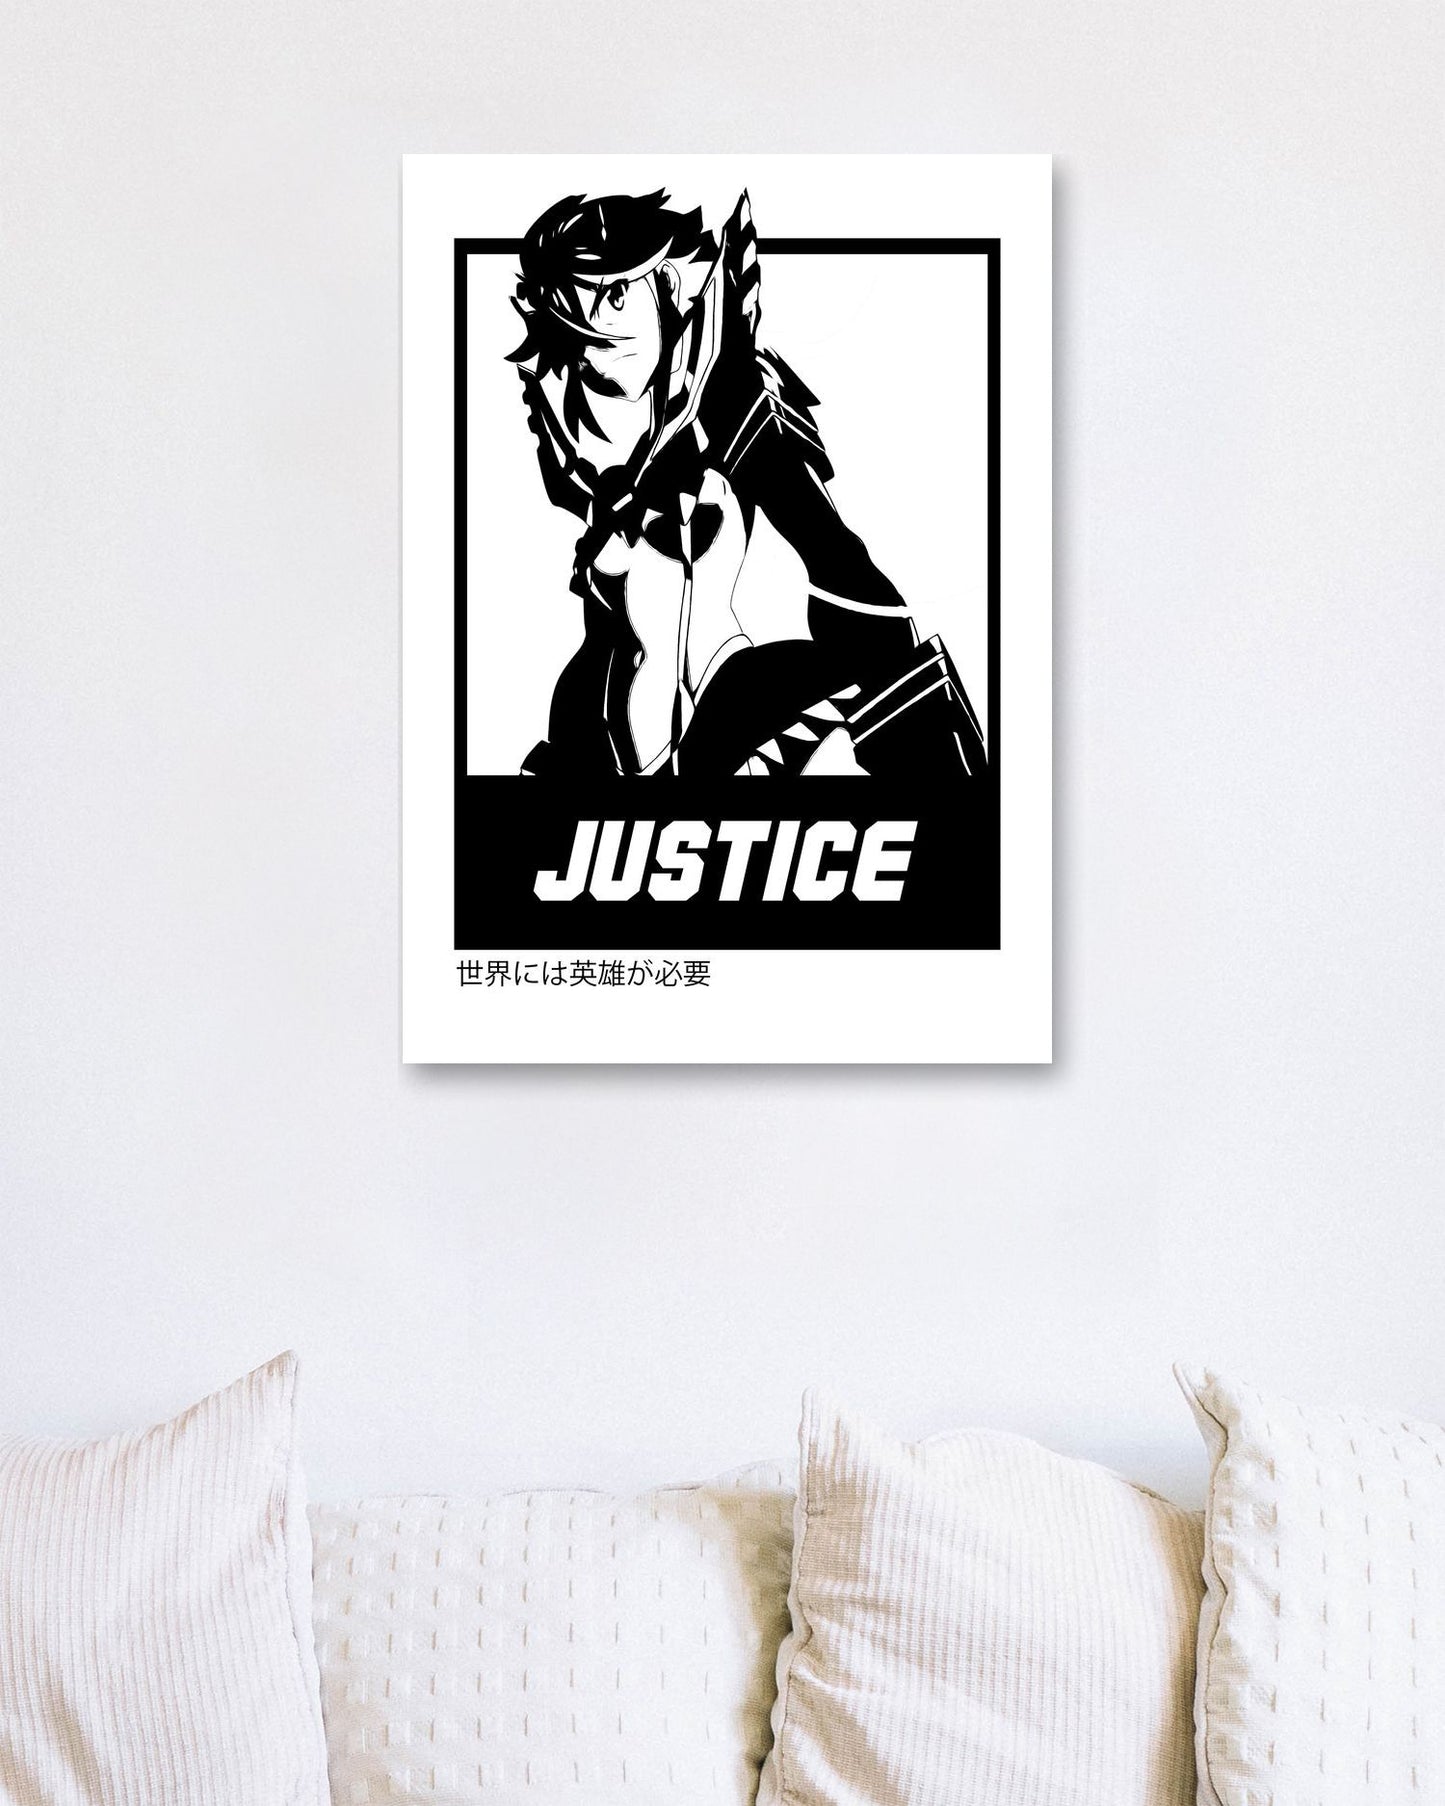 Justice 4 - @FreakCreator